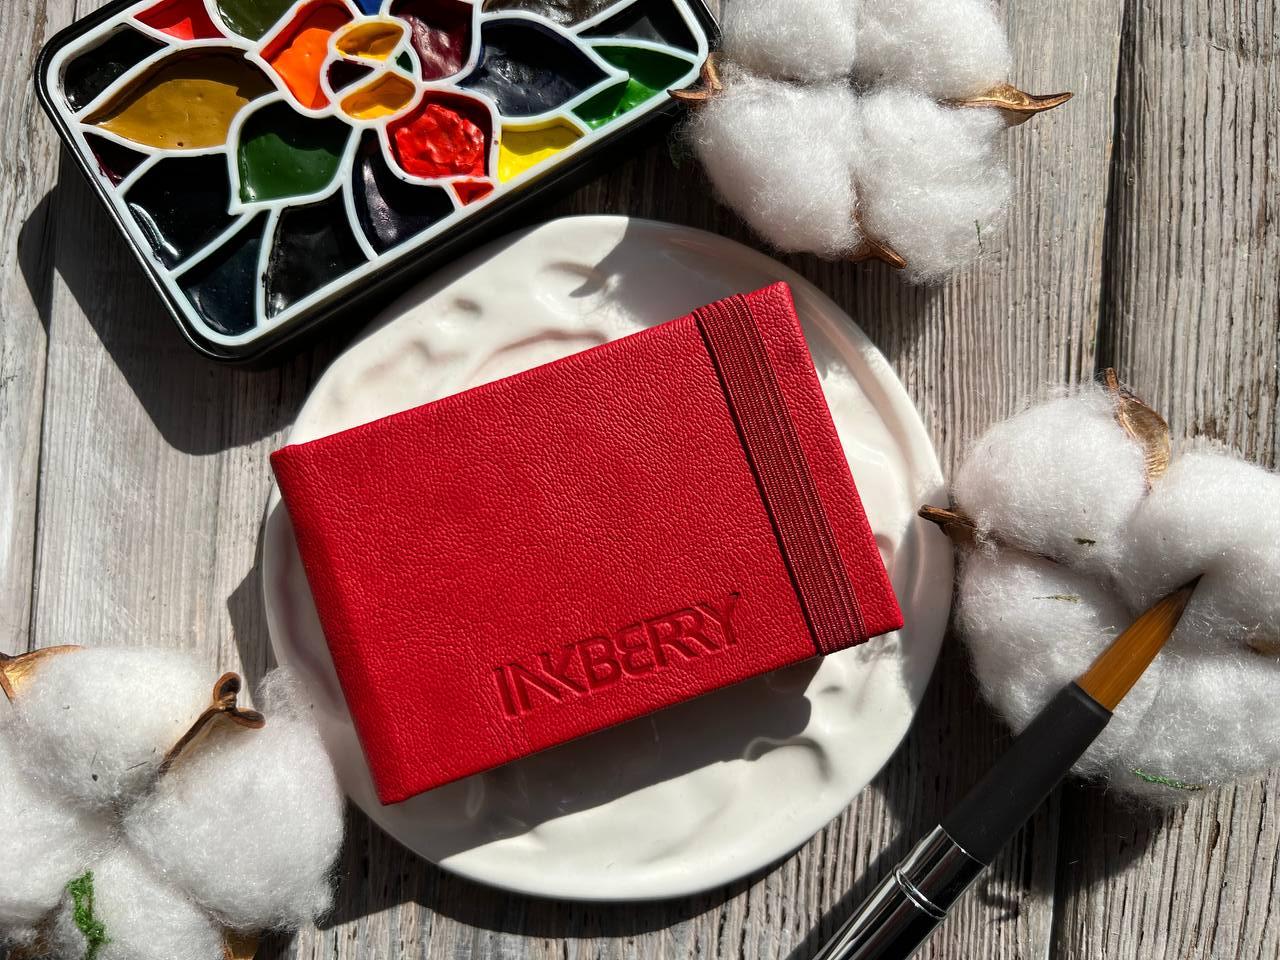 Скетчбук для акварели Inkberry 5х8 см 230 г 50% хлопка, красный скетчбук для акварели inkberry 5х8 см 230 г 50% хлопка